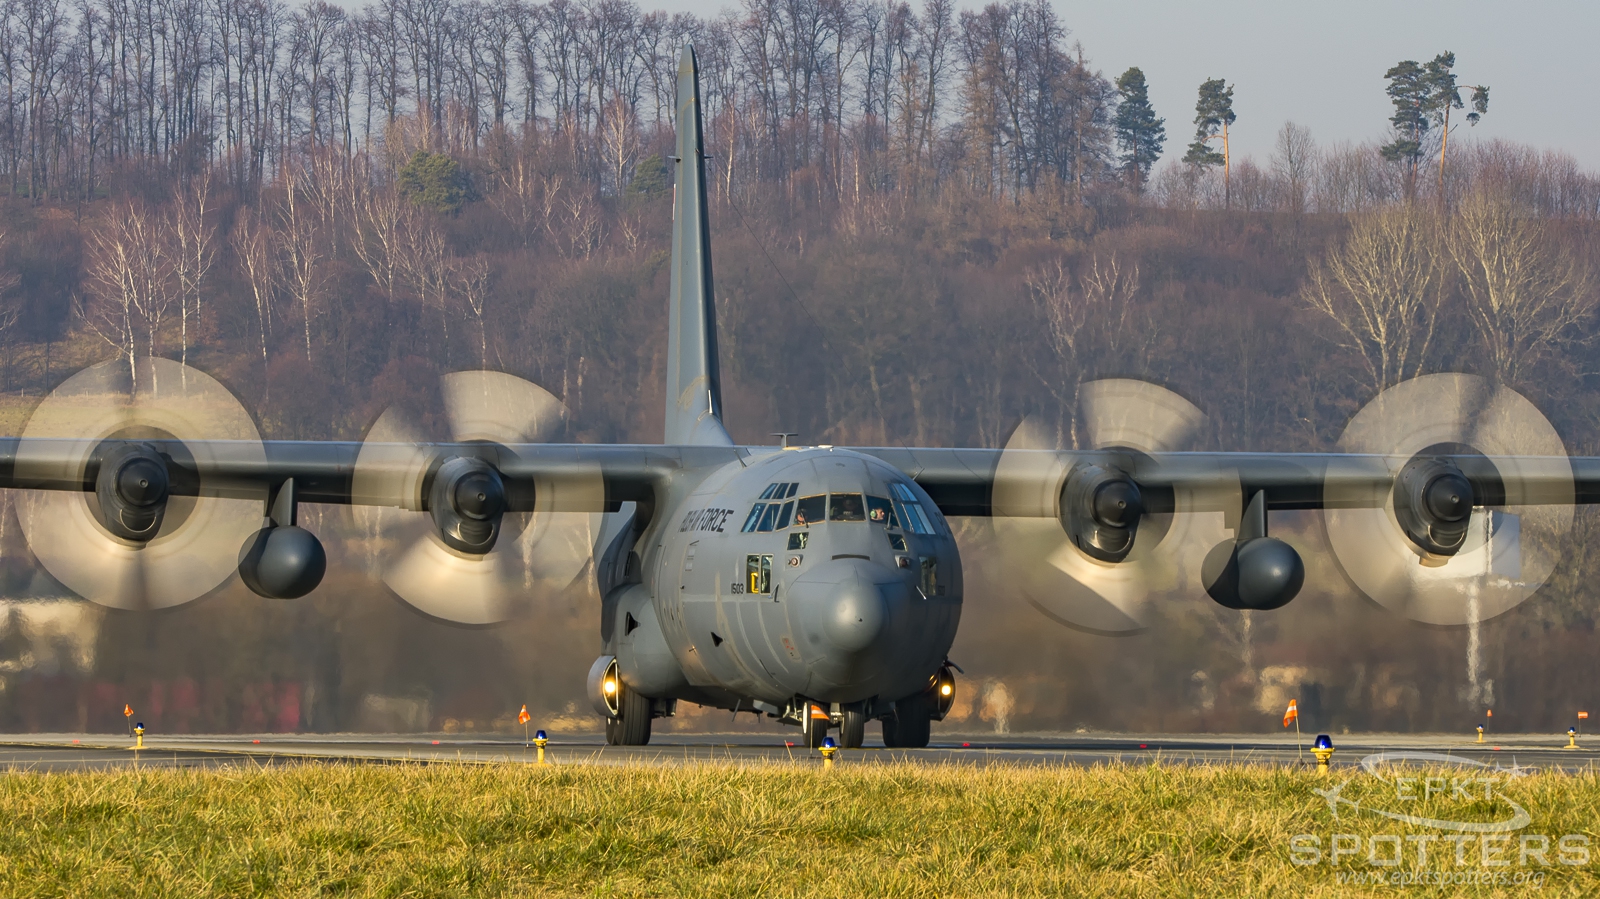 1503 - Lockheed C-130 E Hercules (Poland - Air Force) / Balice - Krakow Poland [EPKK/KRK]